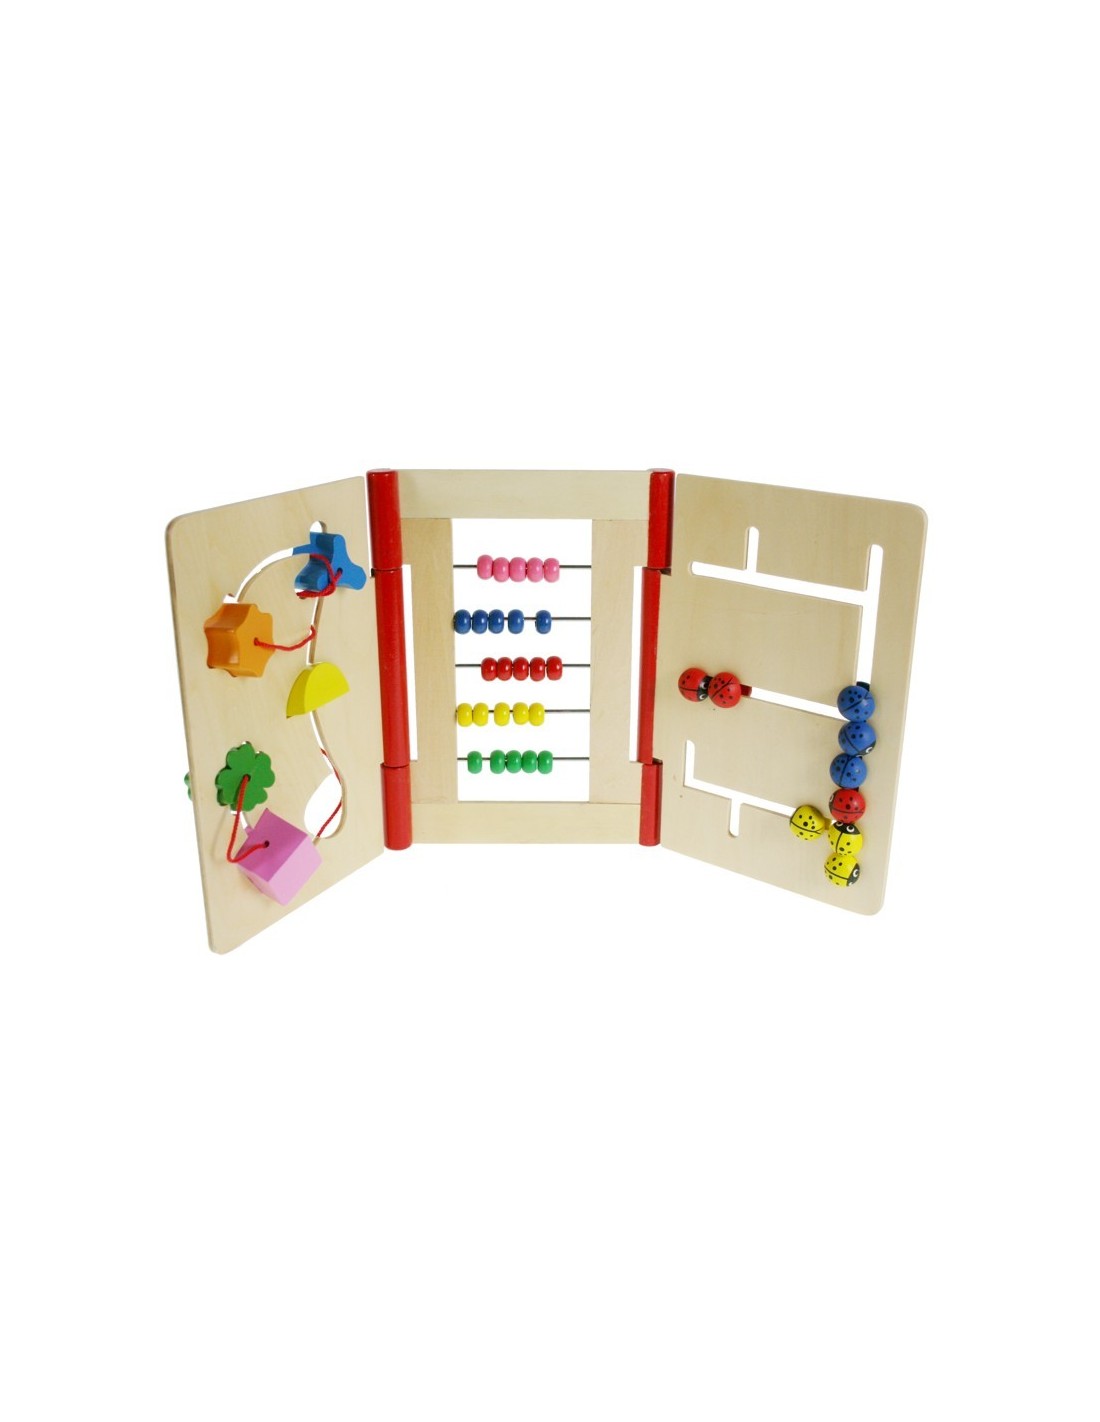 Llibre infantil de fusta de joc de motricitat fina per a nadó amb laberint, càlcul i formes lliscants